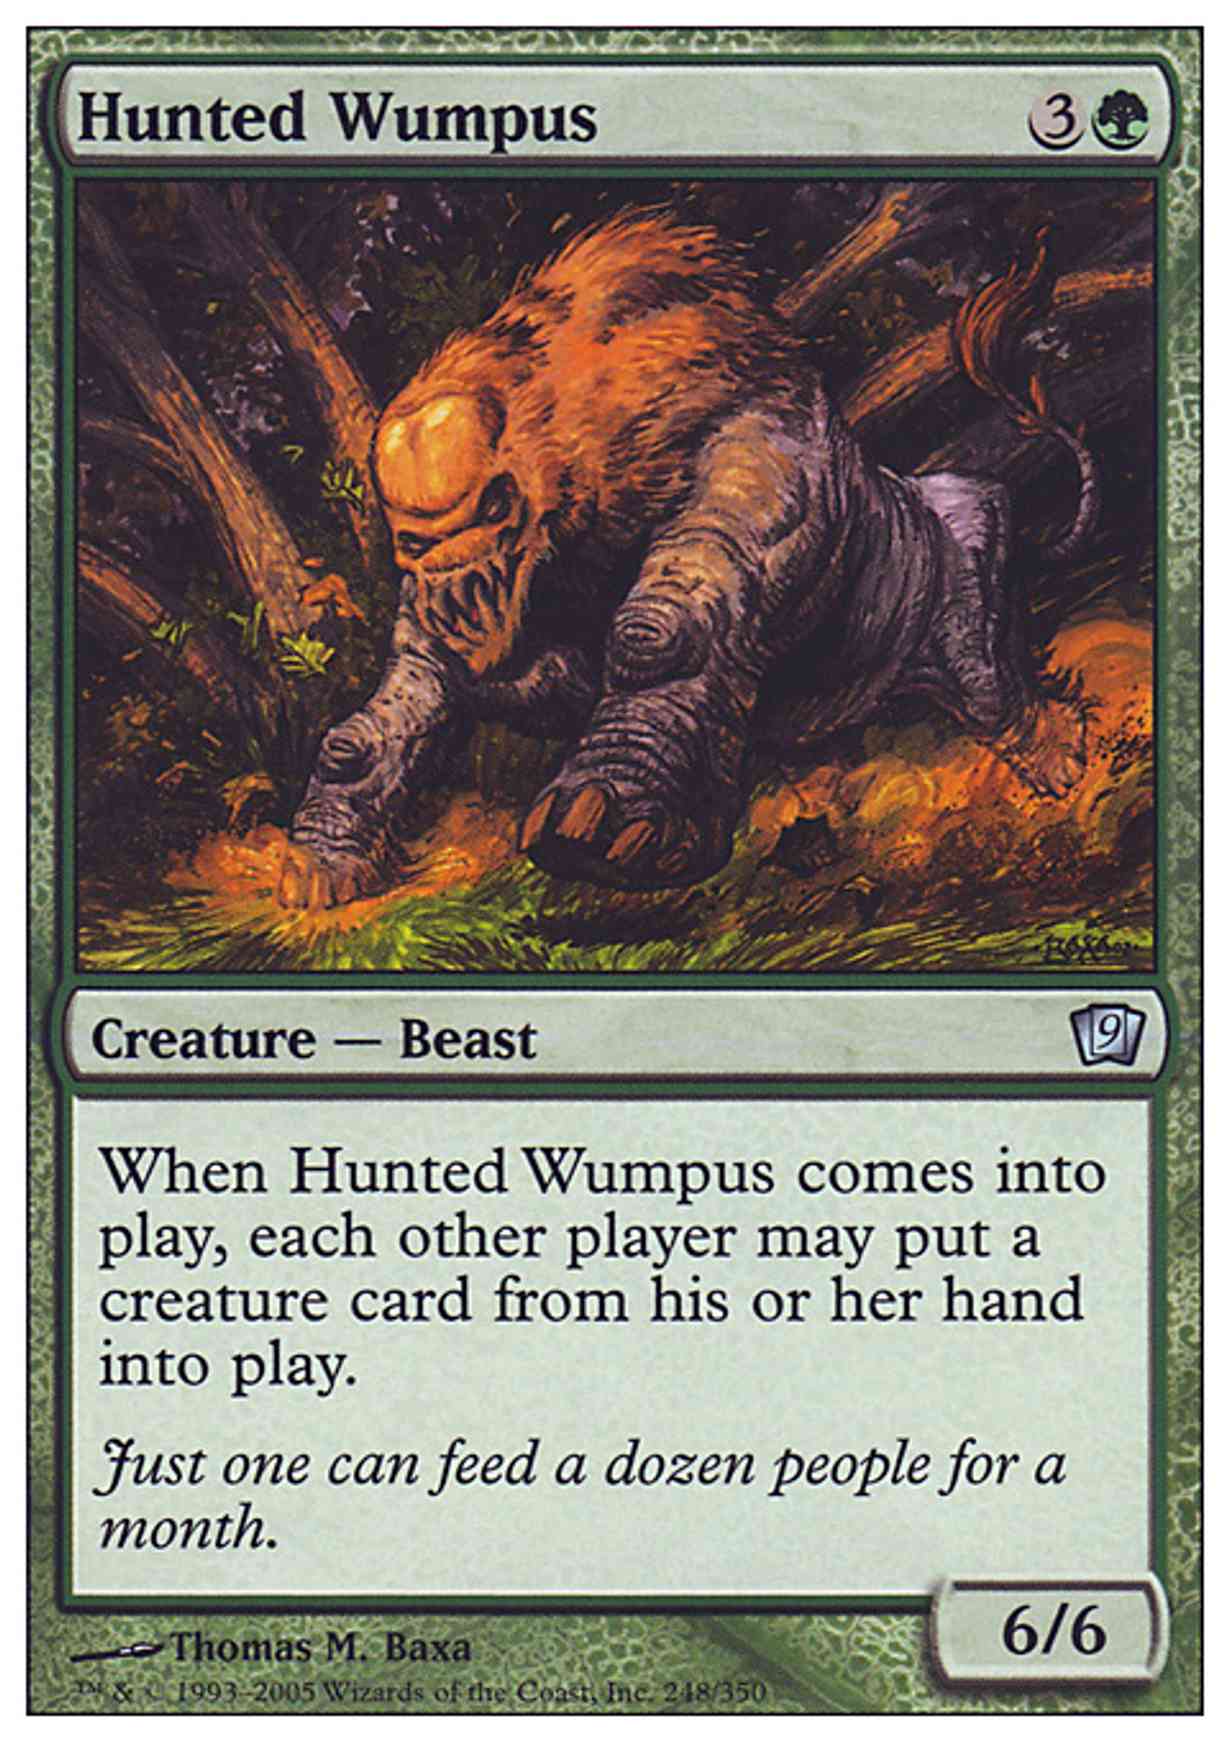 Hunted Wumpus magic card front